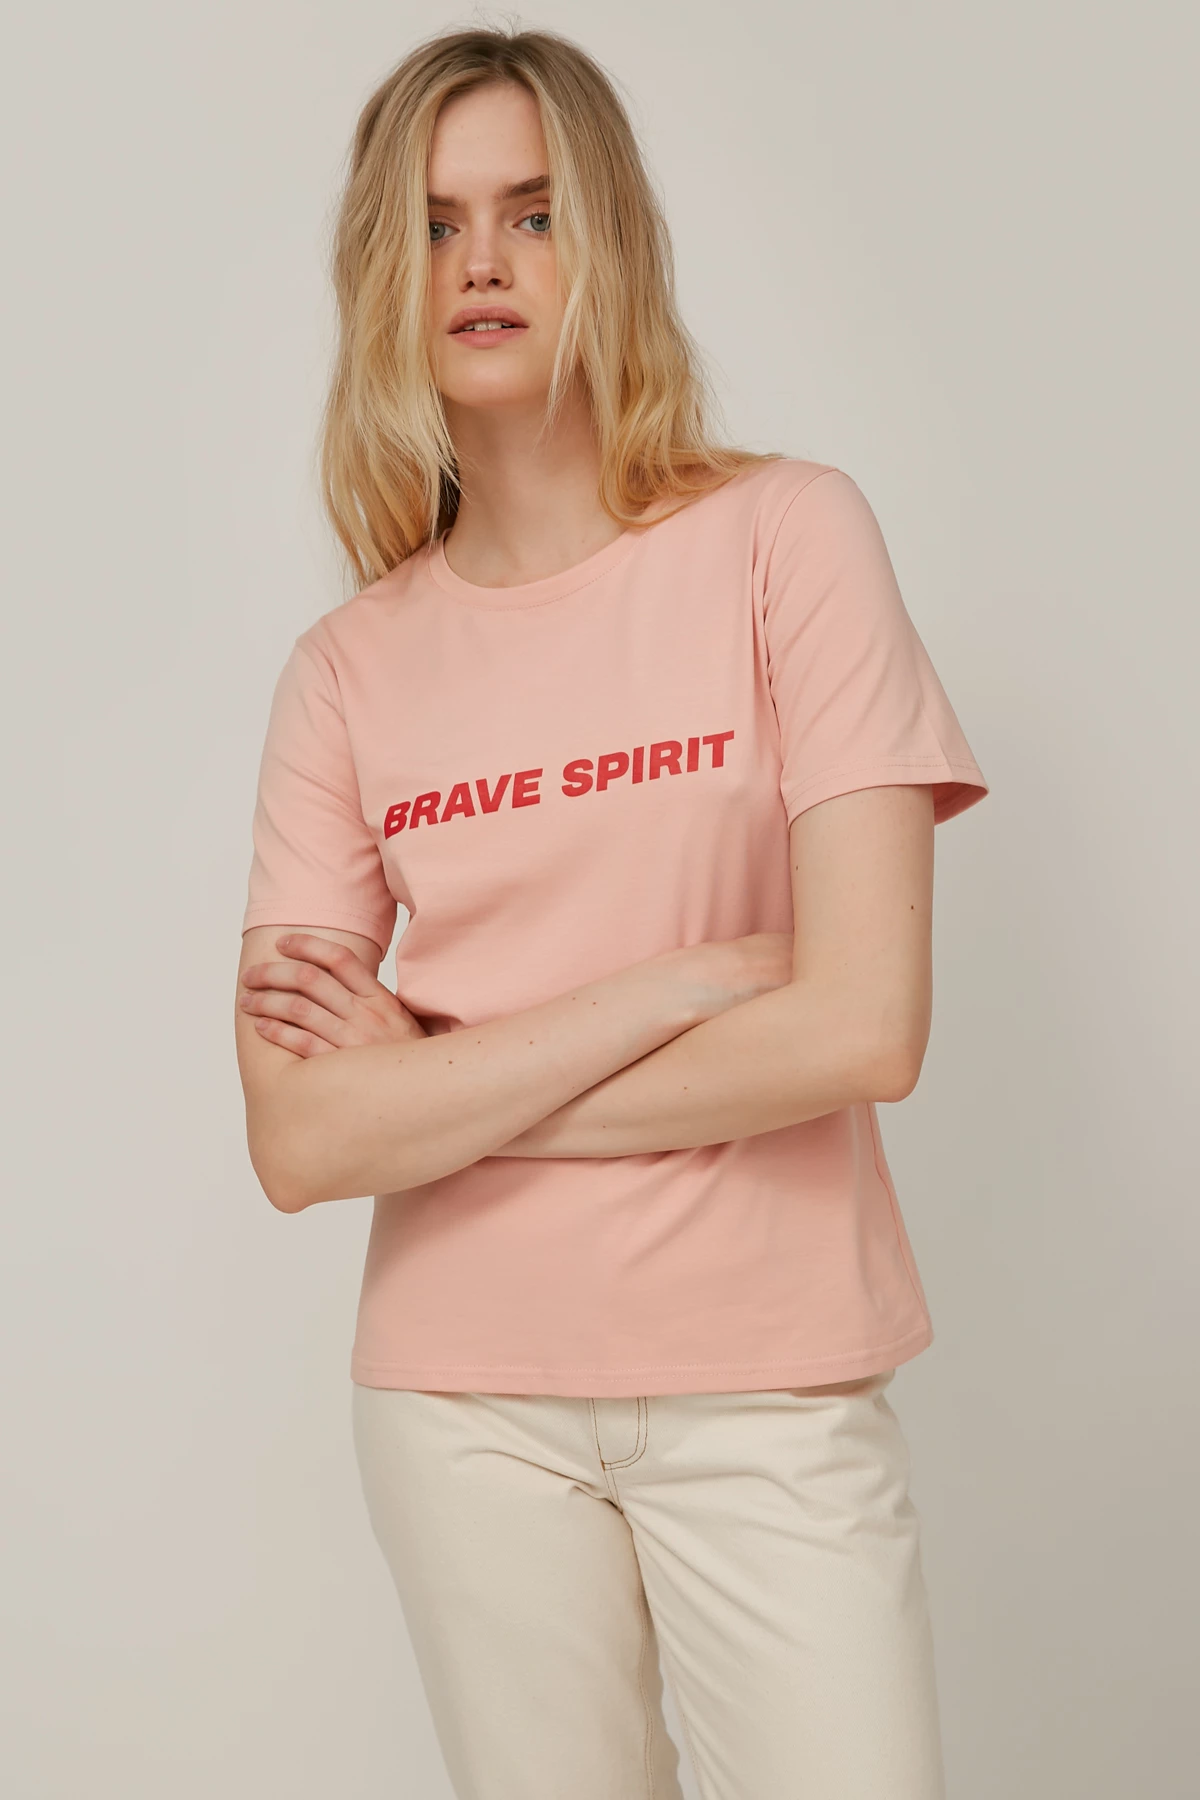 Пудрова трикотажна футболка з написом "Brave Spirit", фото 3